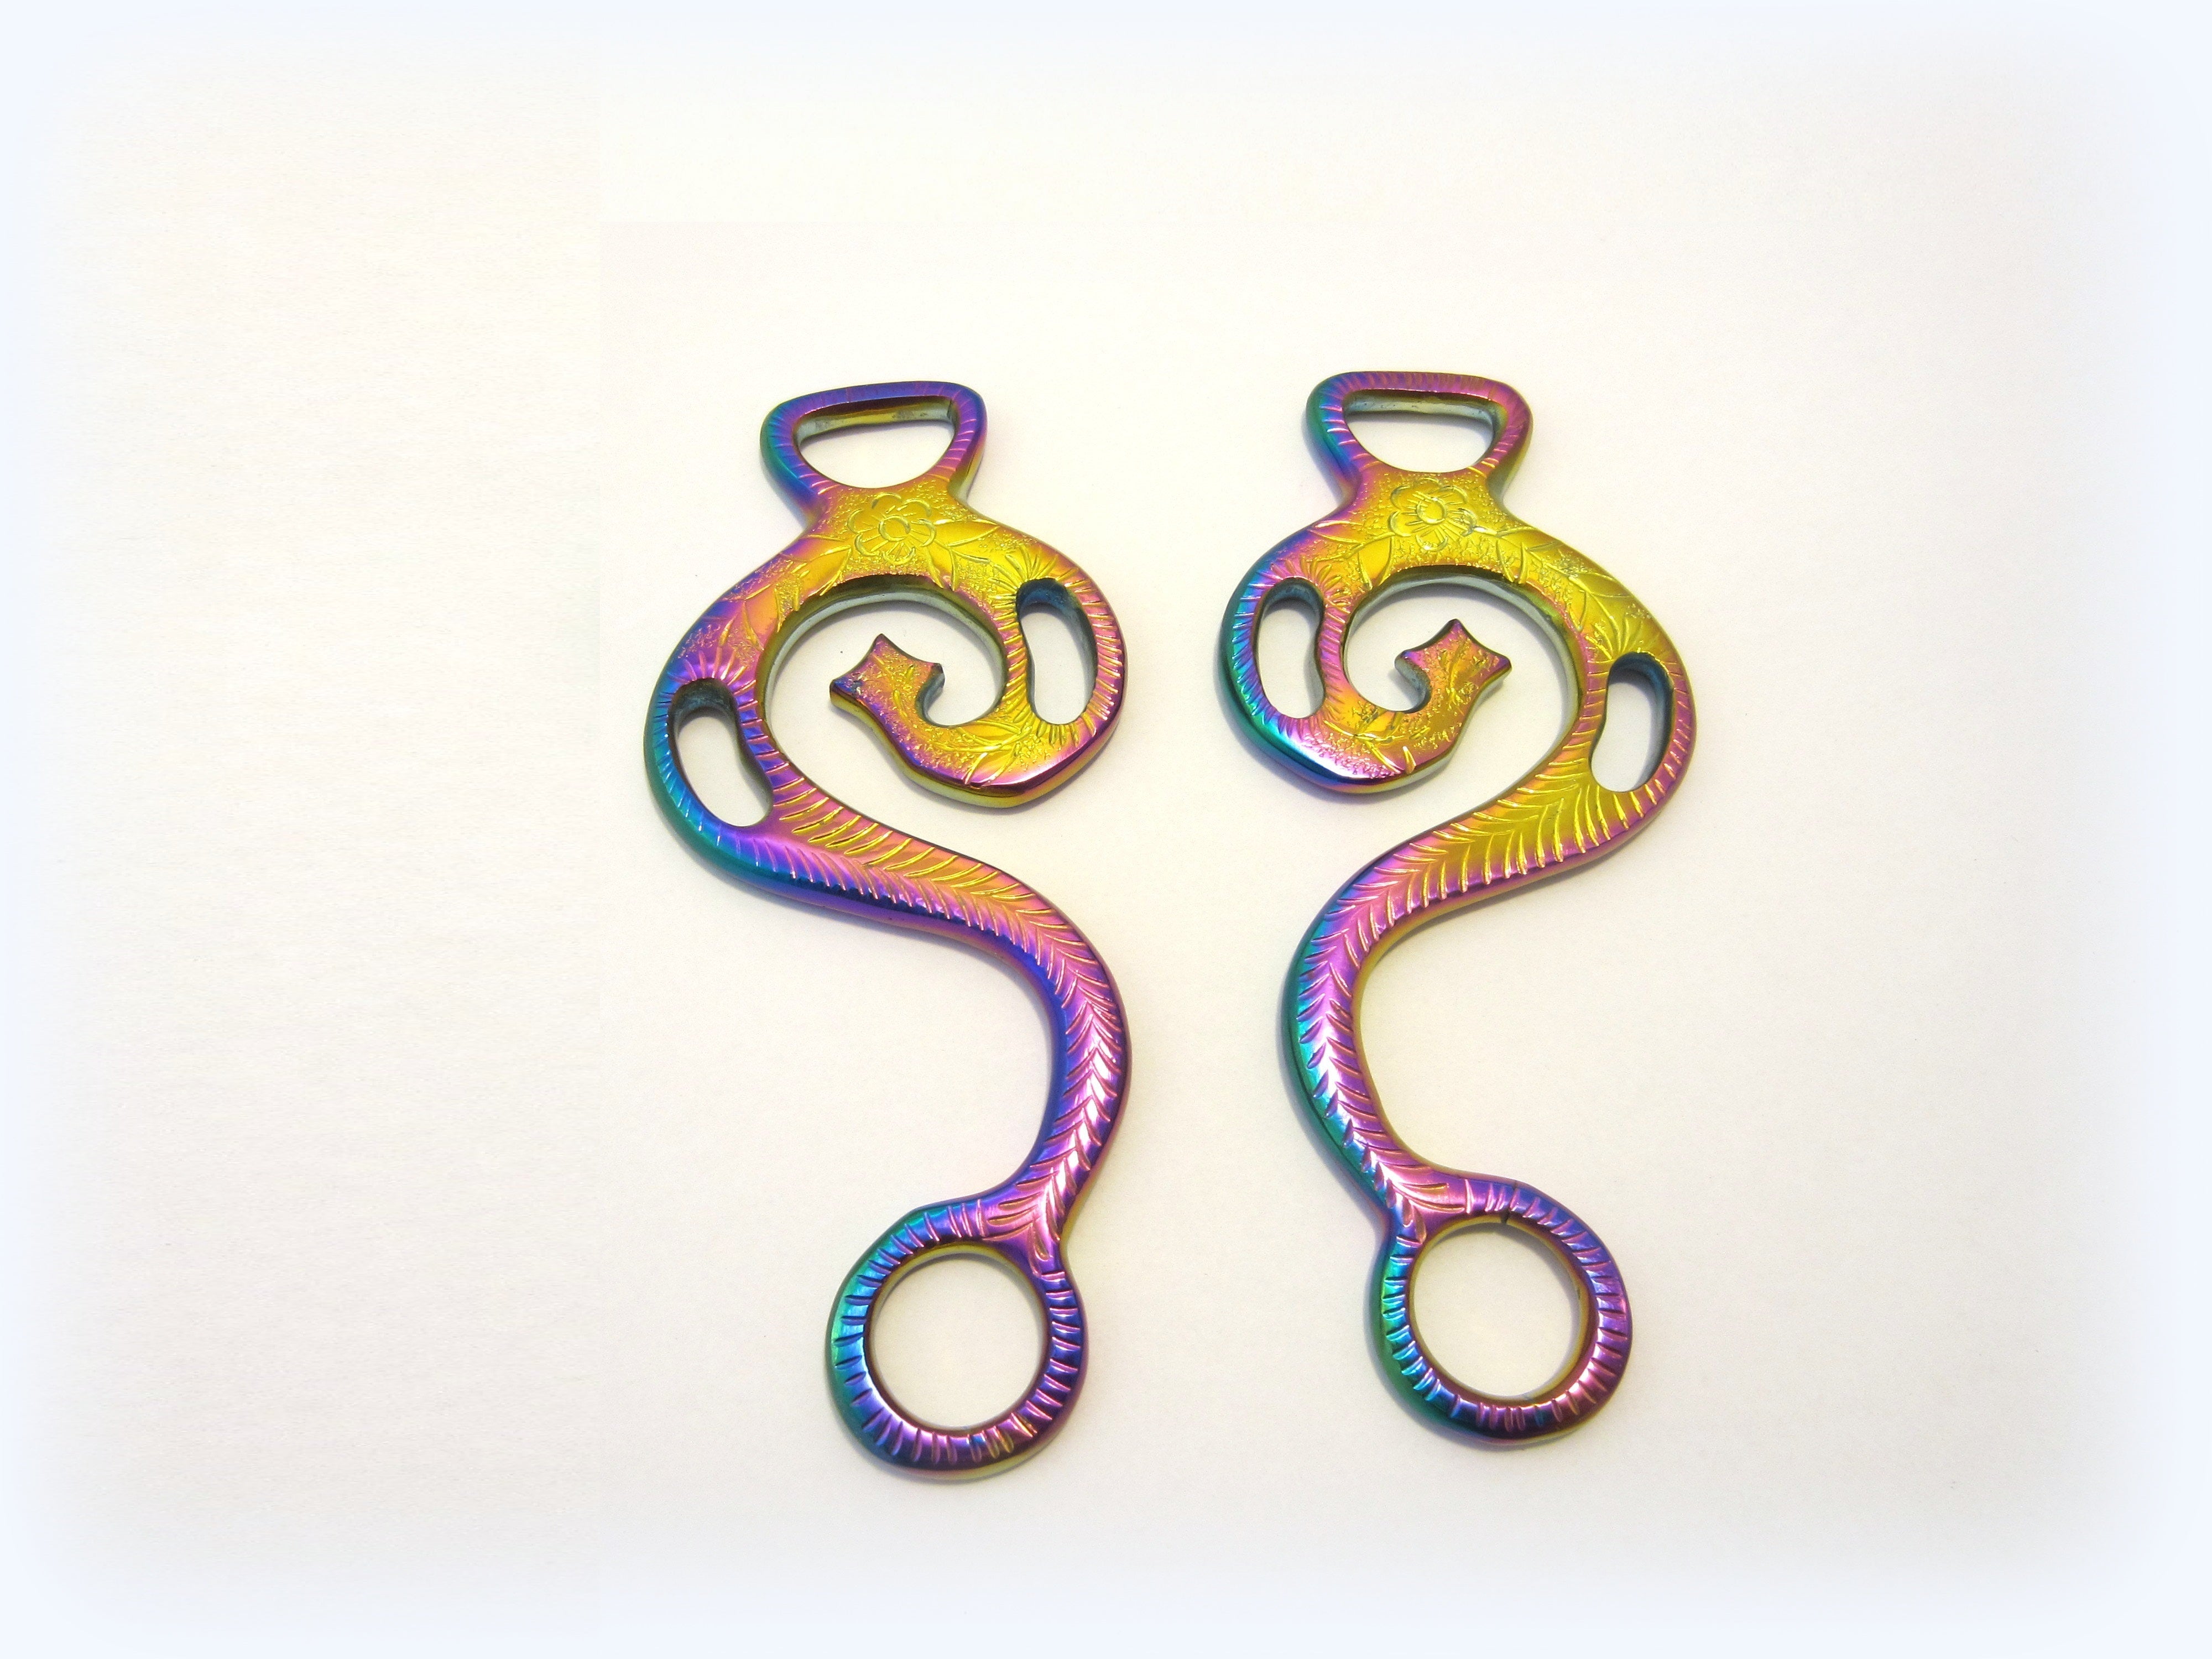 Einzelpaare Hackamore "Barock" Regenbogenfarben, multicolour rainbow - 1 Paar Schenkel, verziert